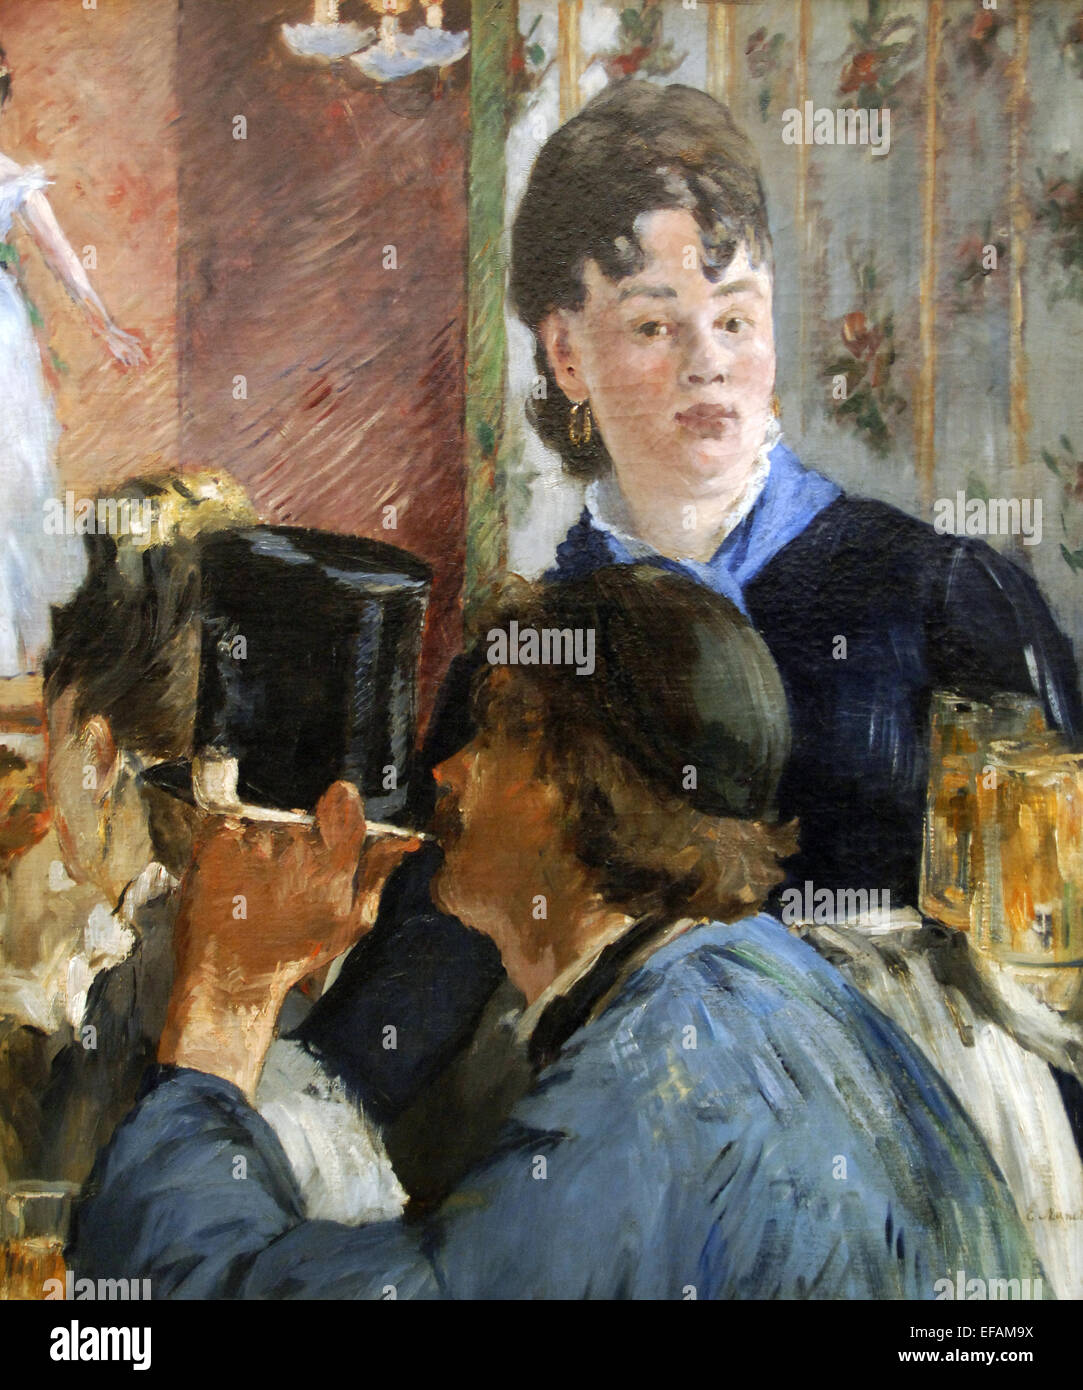 Edouard Manet (1832-1883). Französischer Maler. Die Bier-Maid, 1879. Öl auf Leinwand. Impressionismus. Musée d ' Orsay. Paris. Frankreich. Stockfoto